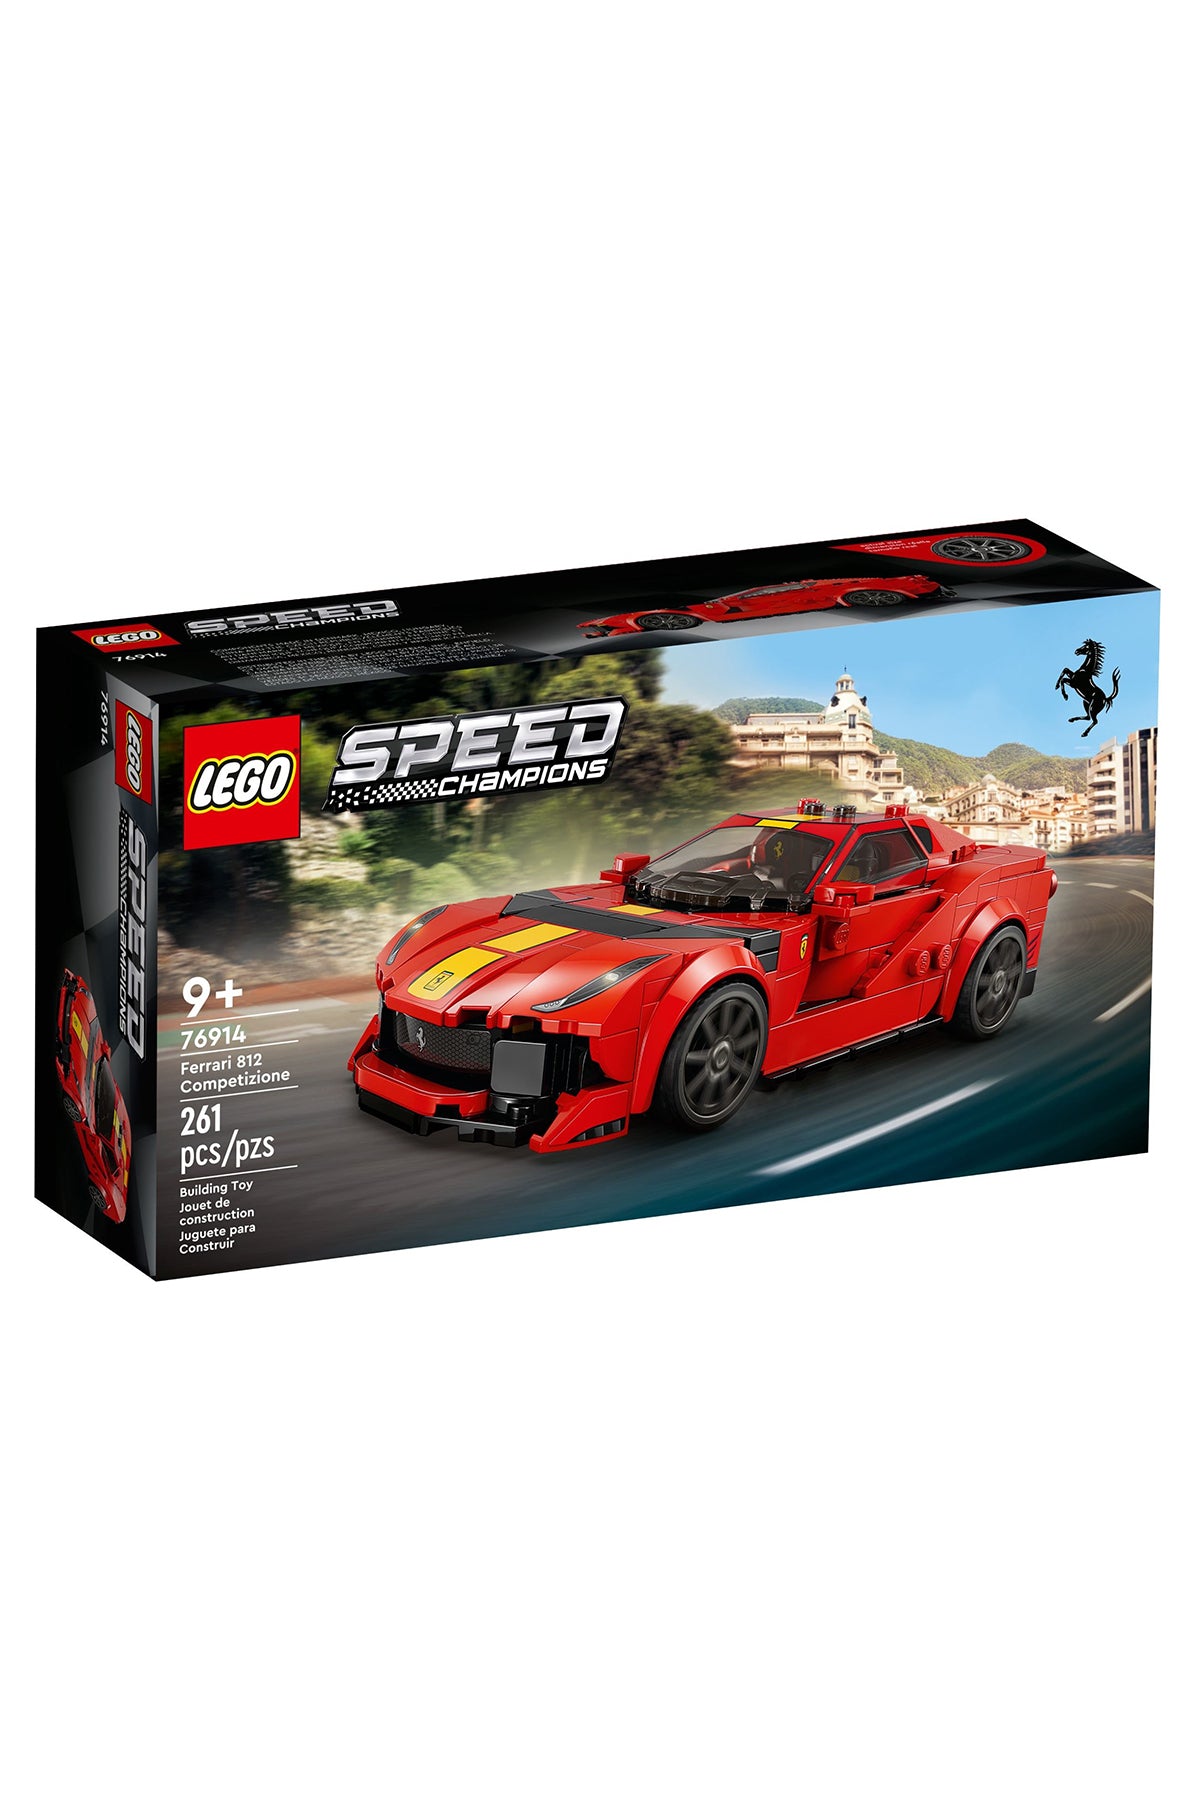 Lego Speed Champions : Ferrari 812 Competizione